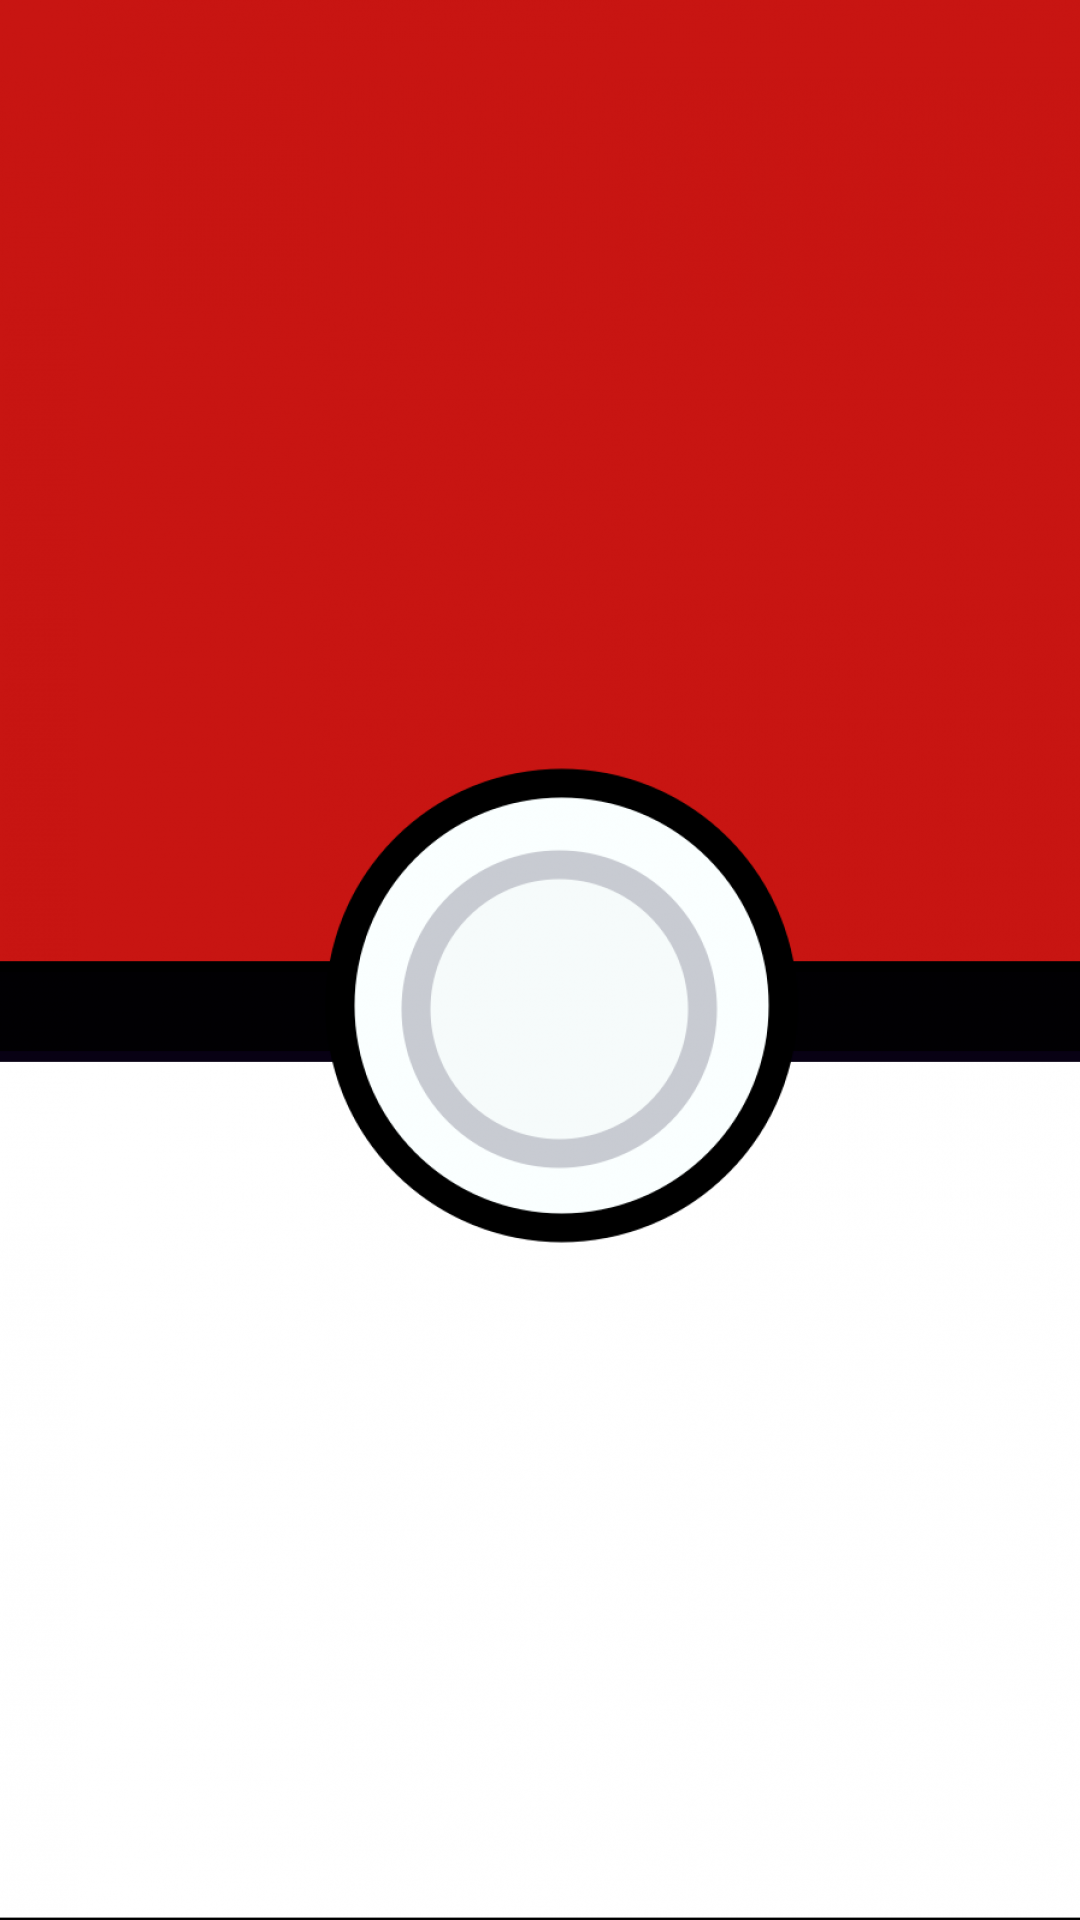 Video Game Pokemon. Imagens De Pokemon, Pokémon Desenho, Coisas De Pokemon